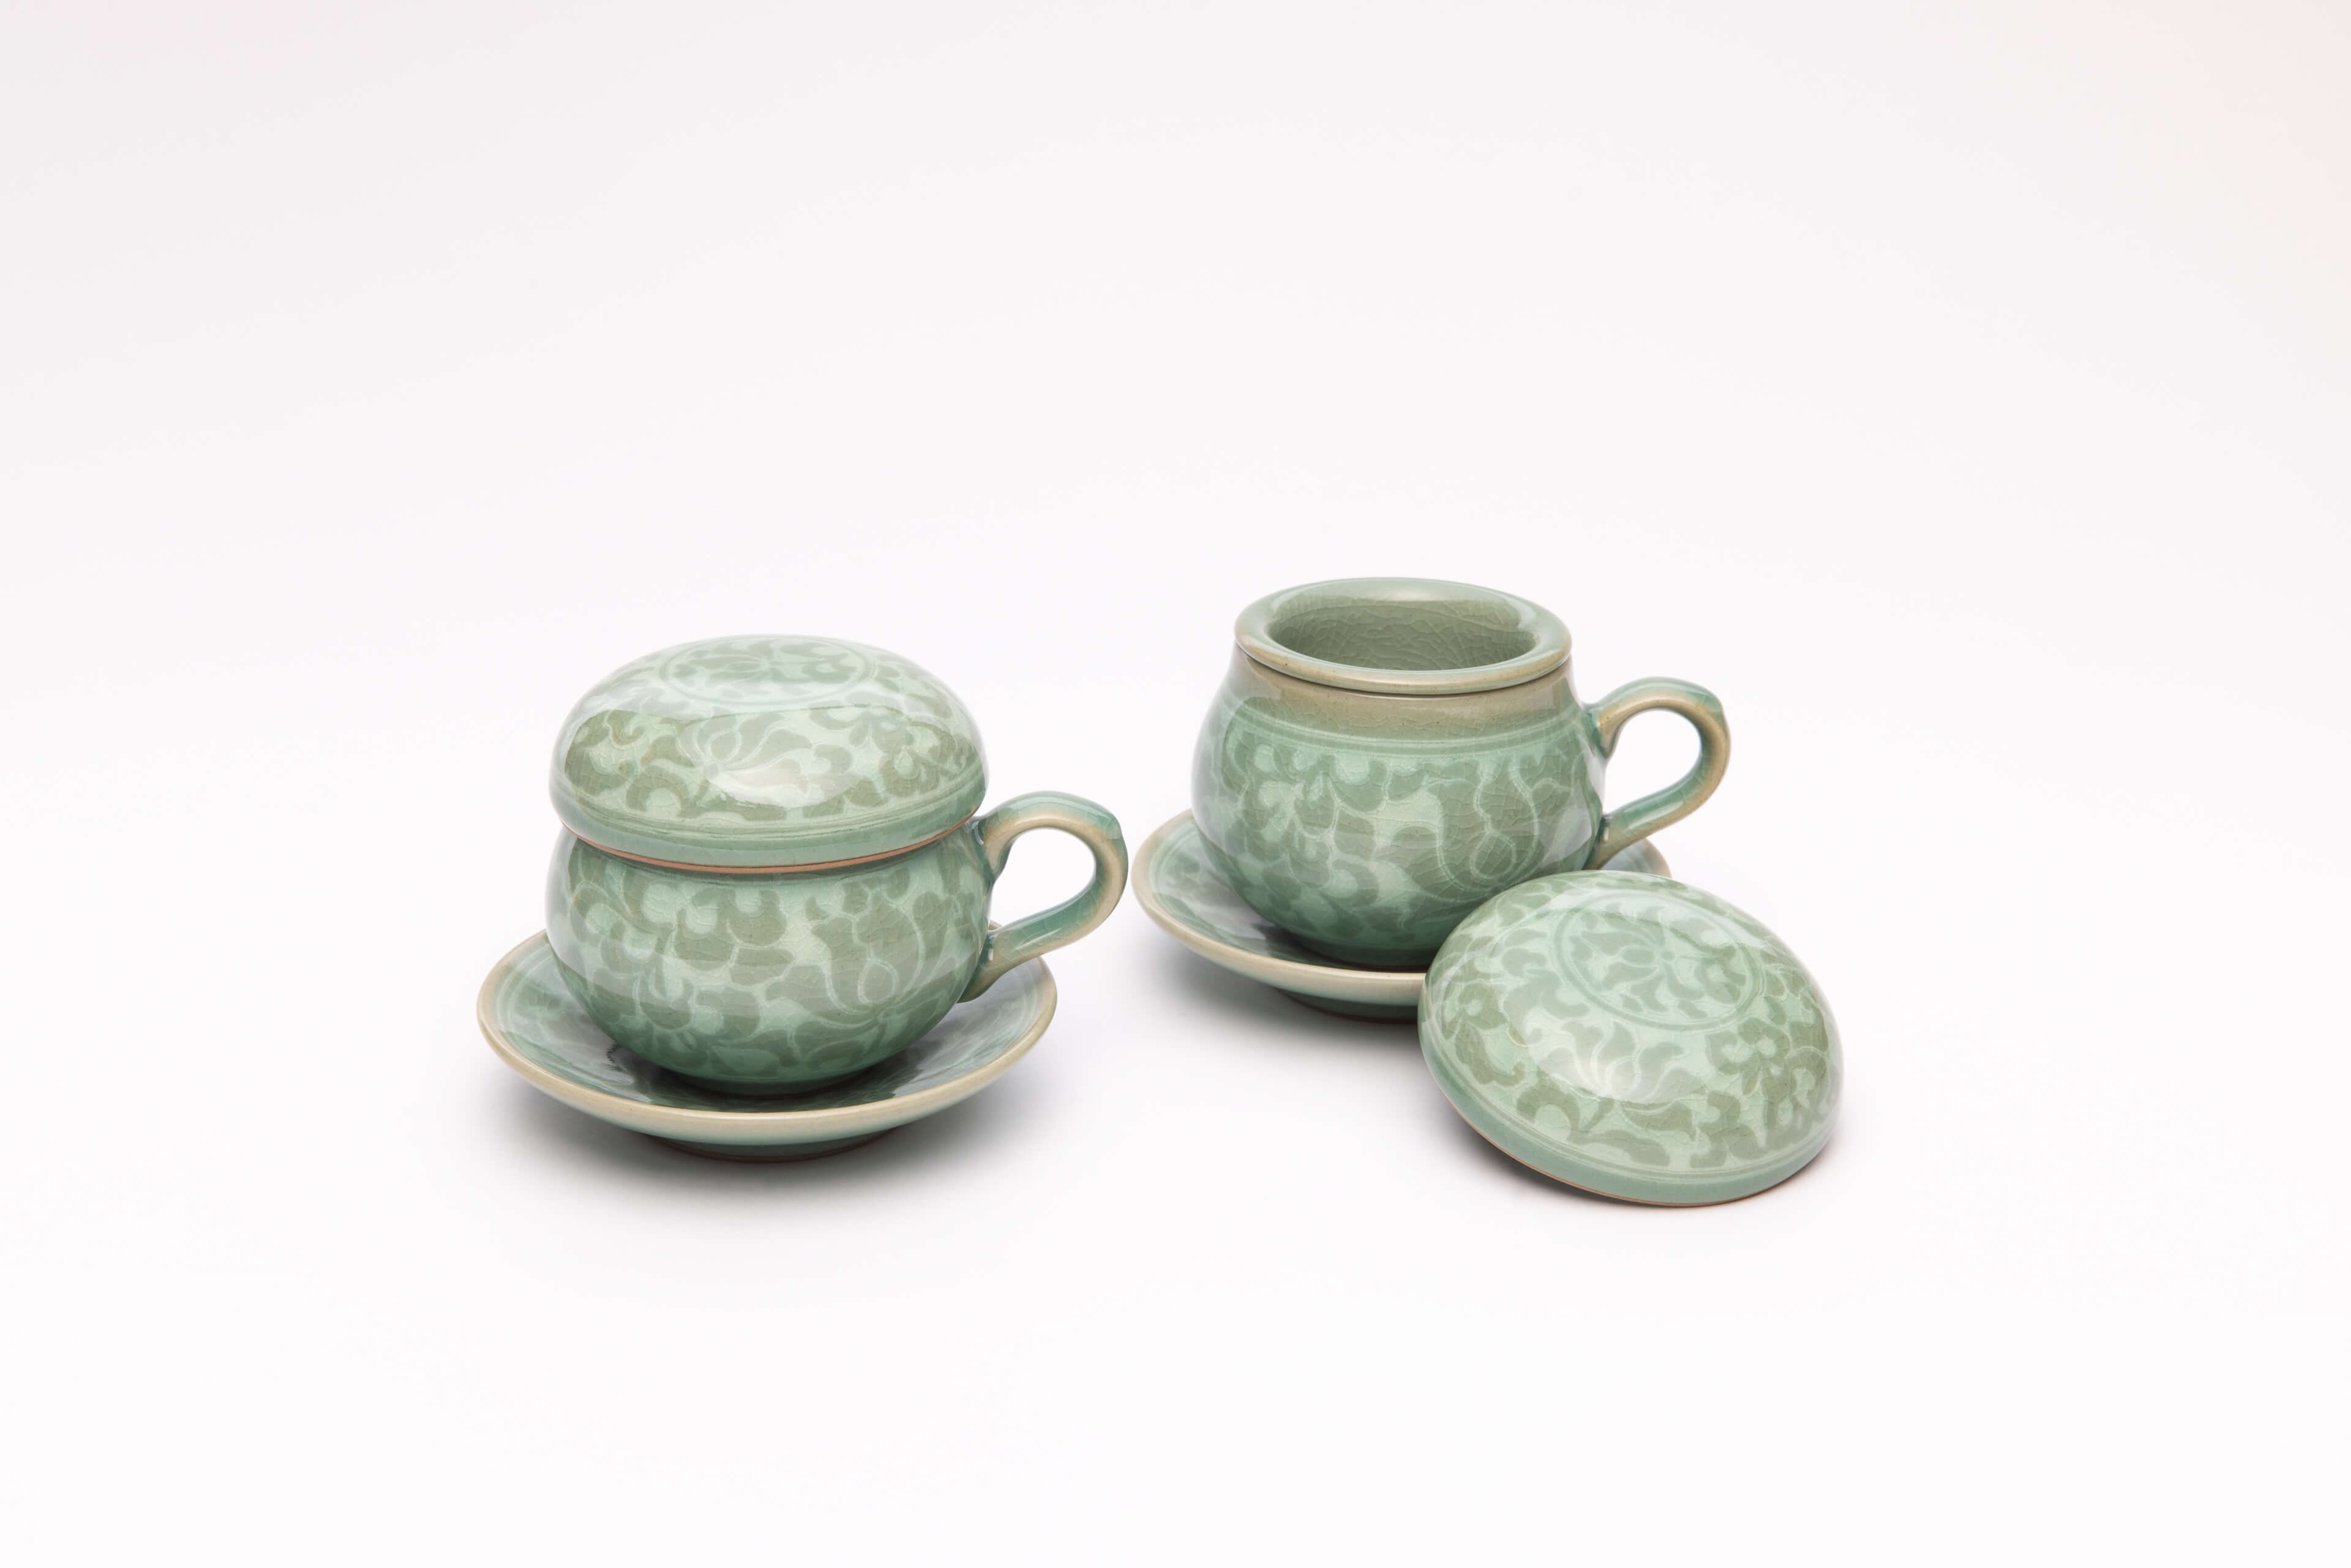 韓國傳統青瓷茶具-圖片